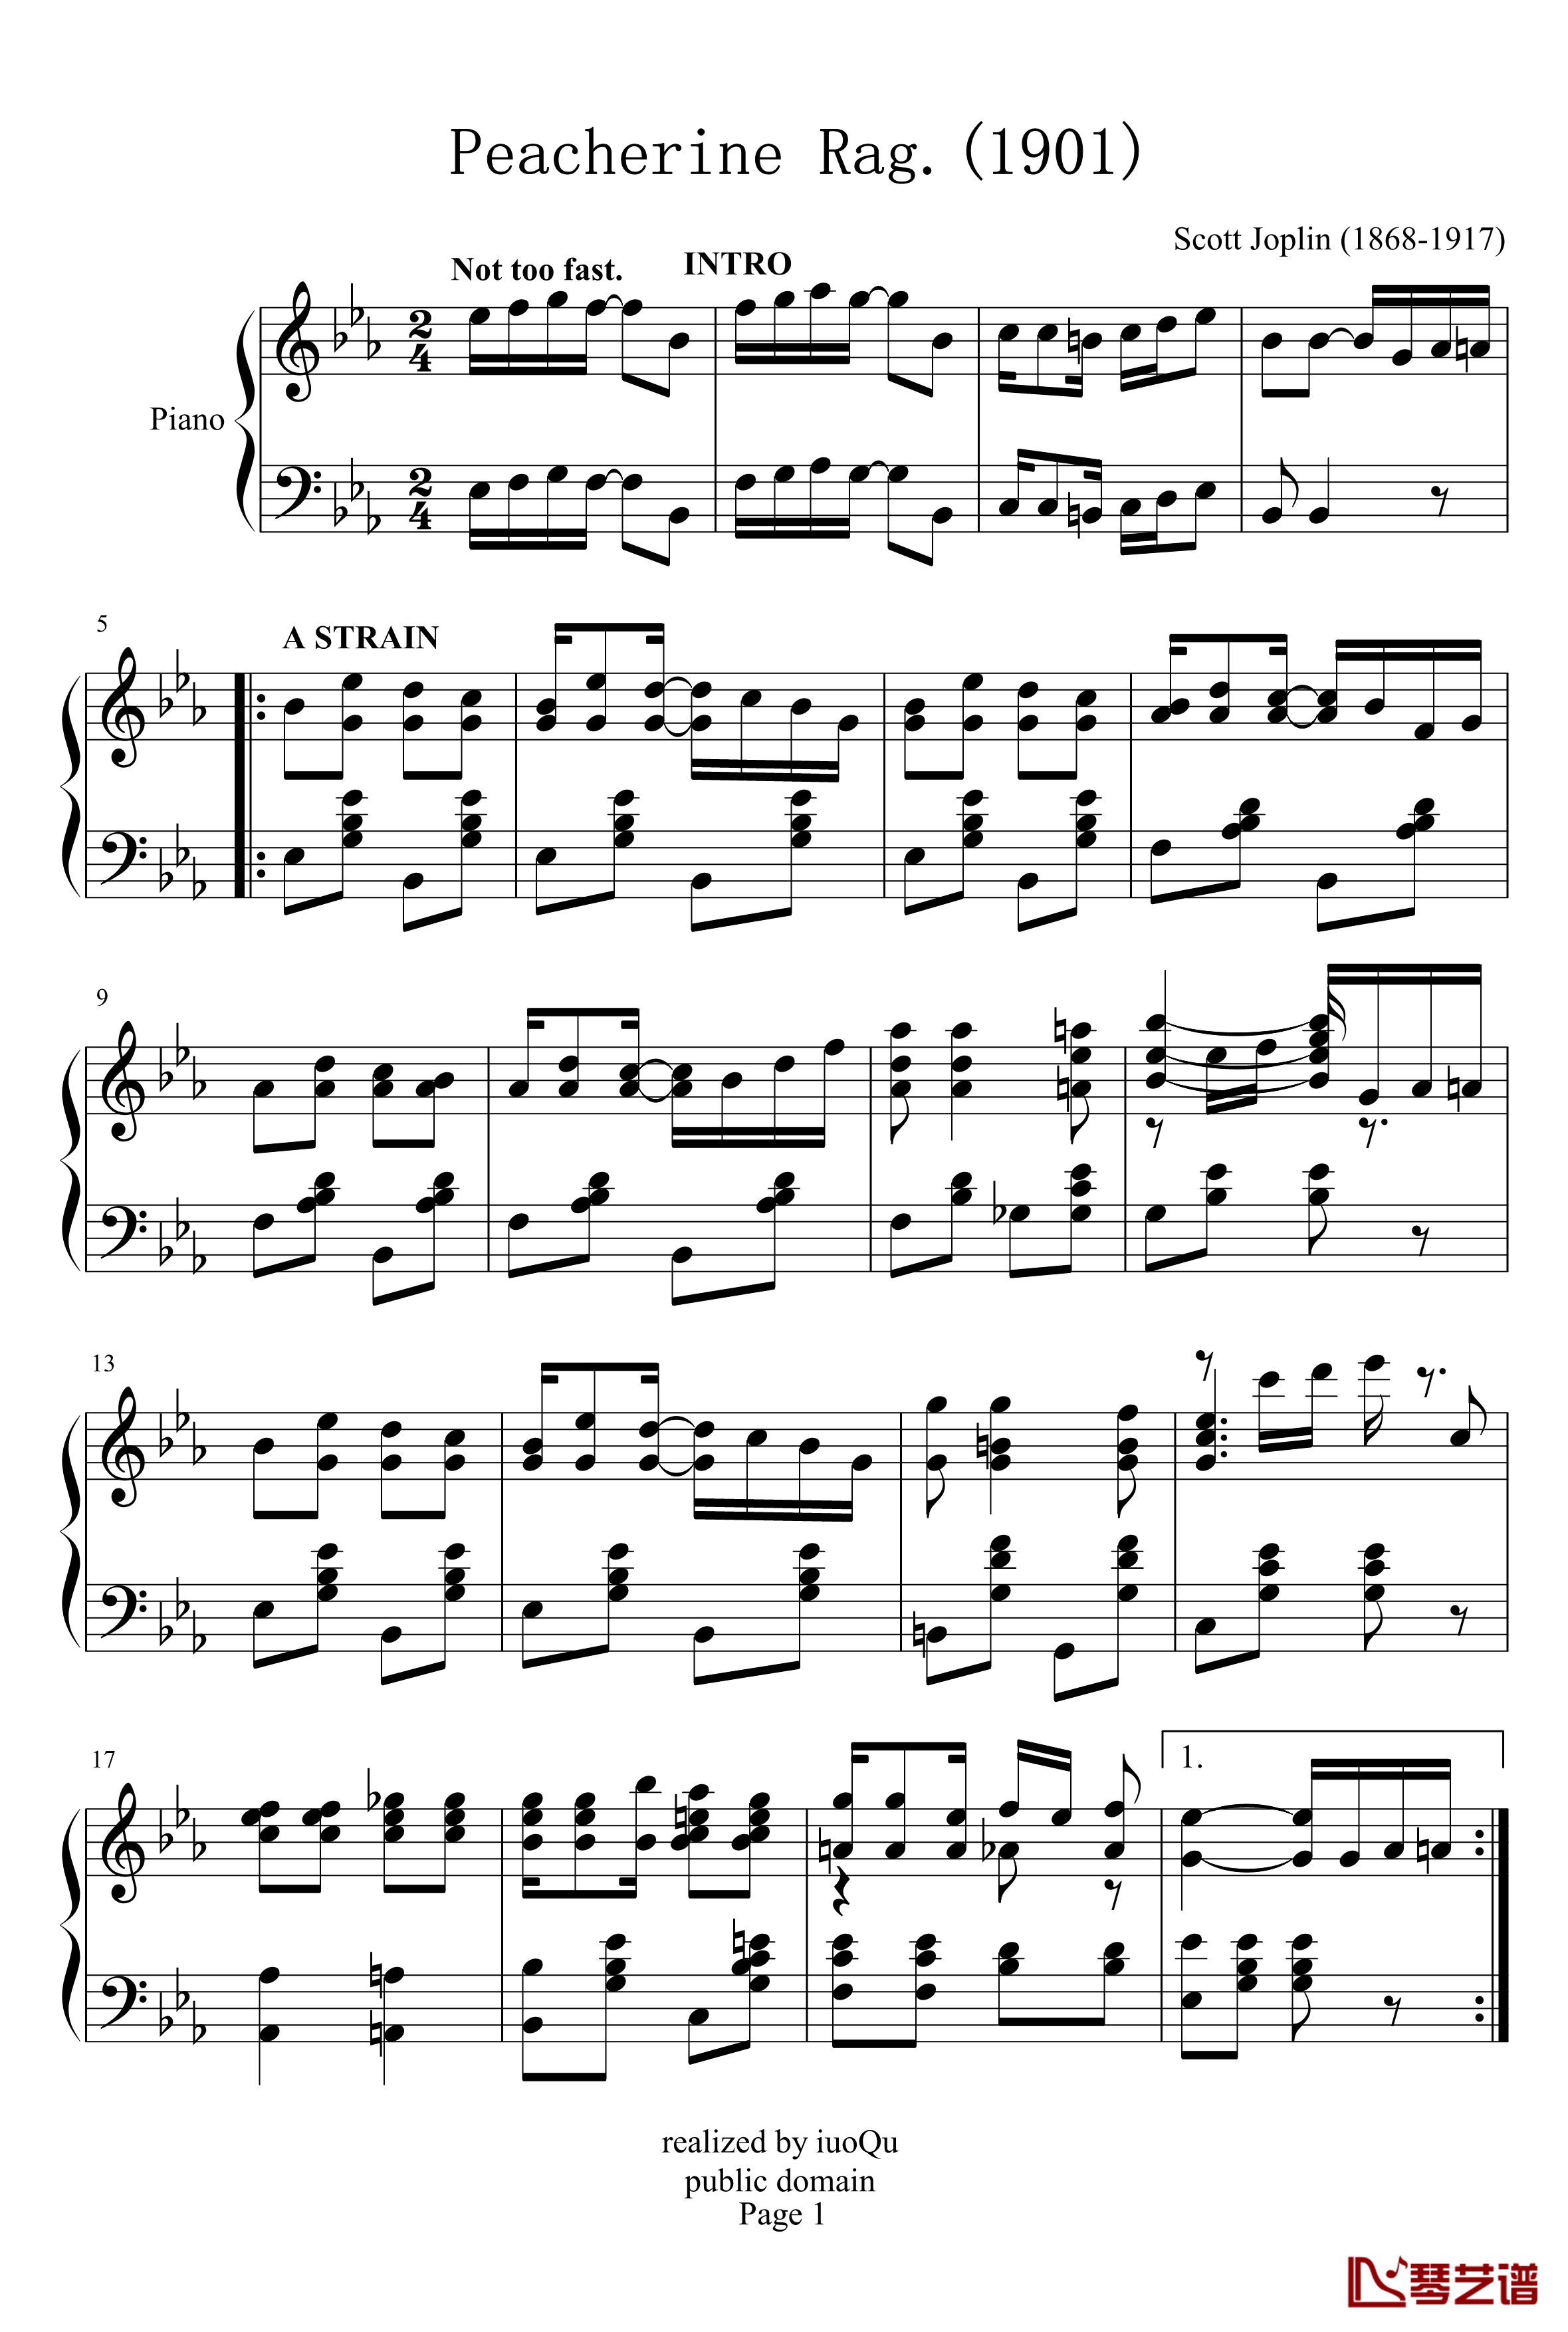 Peacherine Rag钢琴谱-斯科特·乔普林-Scott Joplin-海上钢琴师1